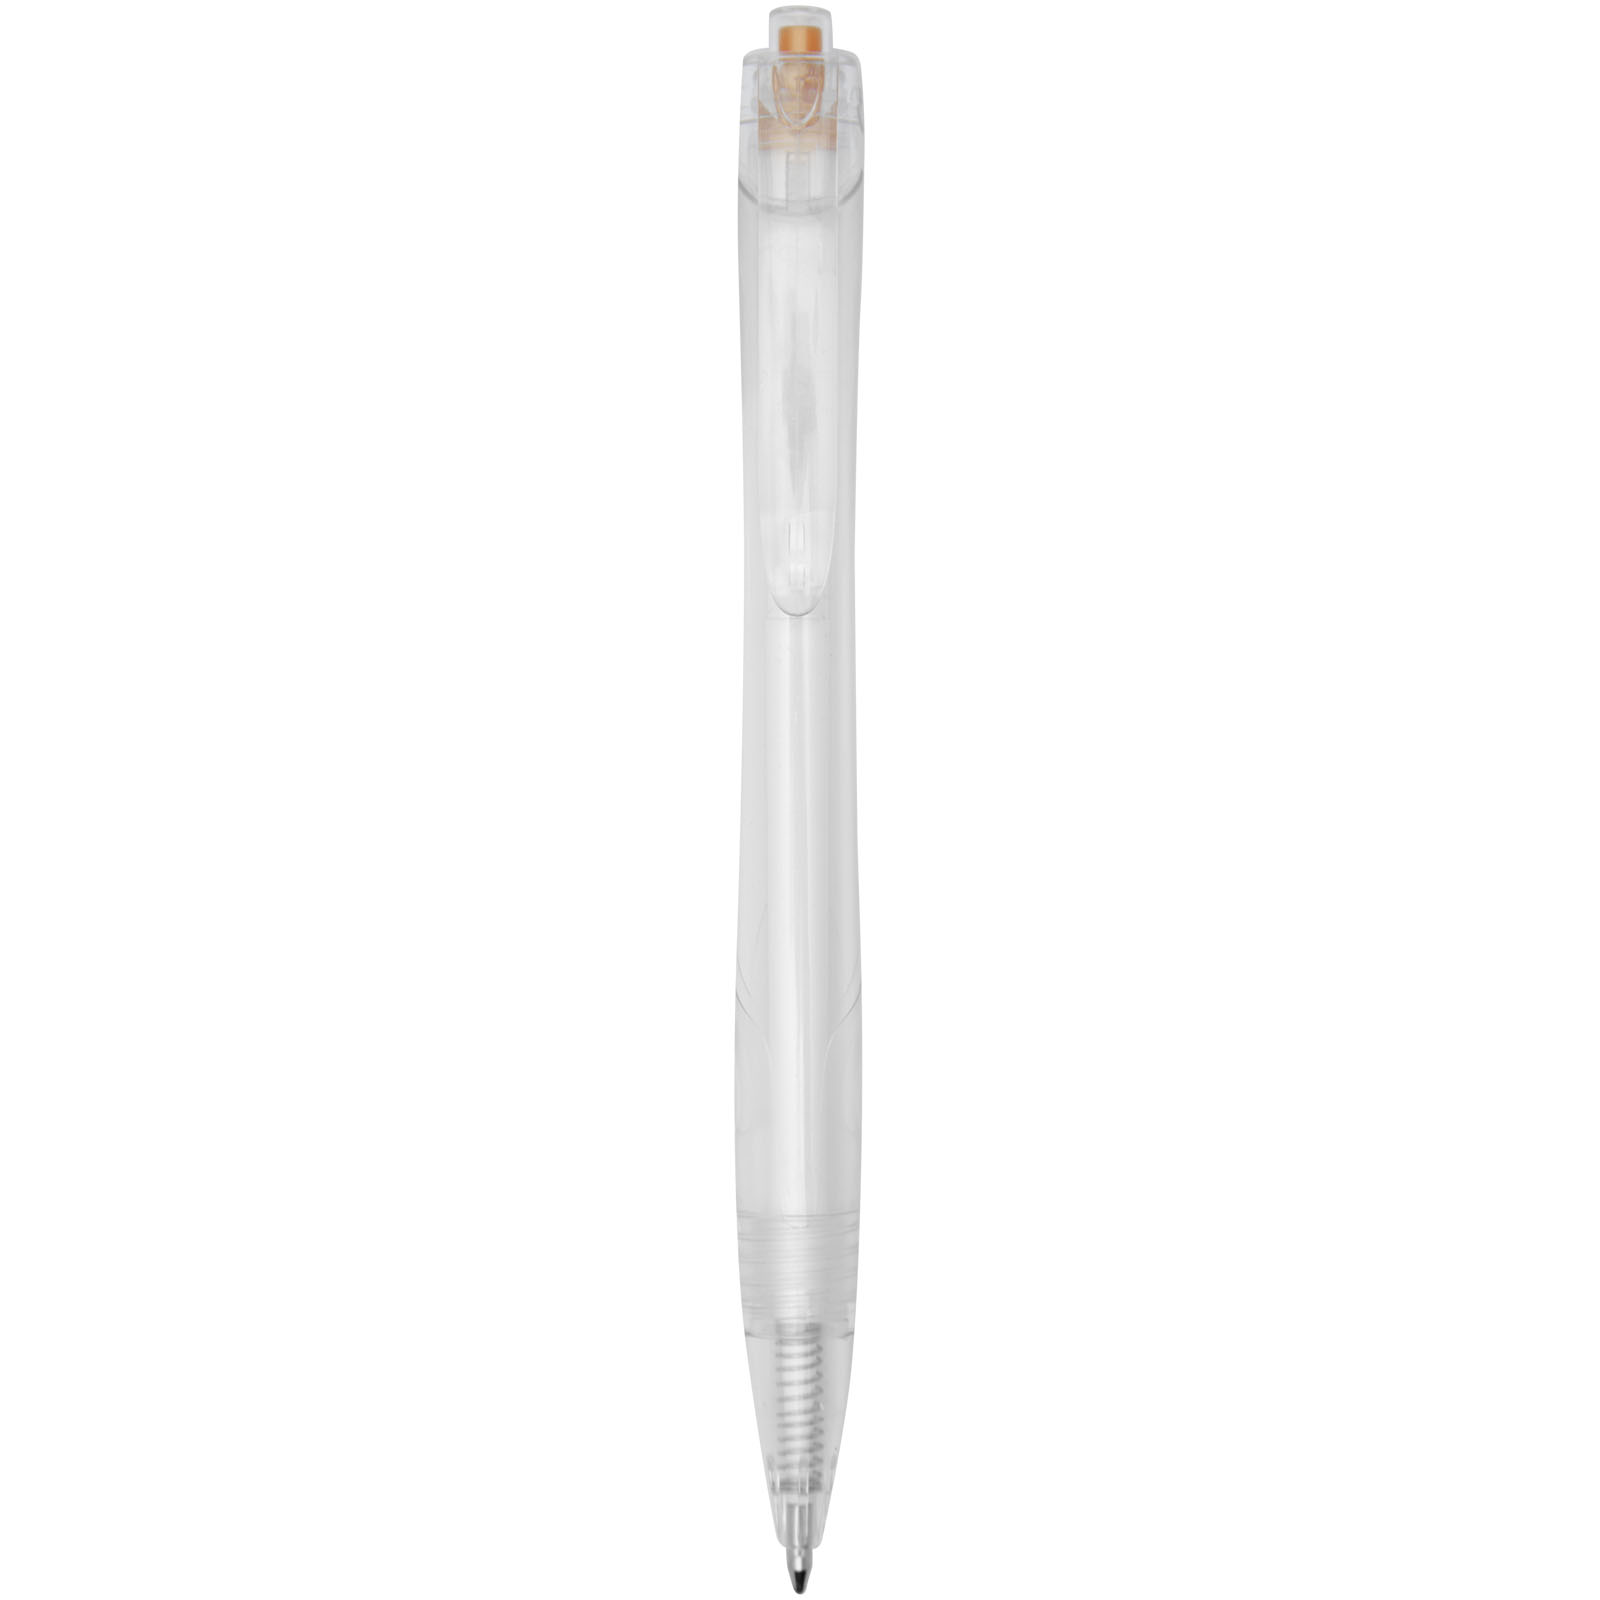 Plastic ballpoint pen LARKSLANE made of recycled material